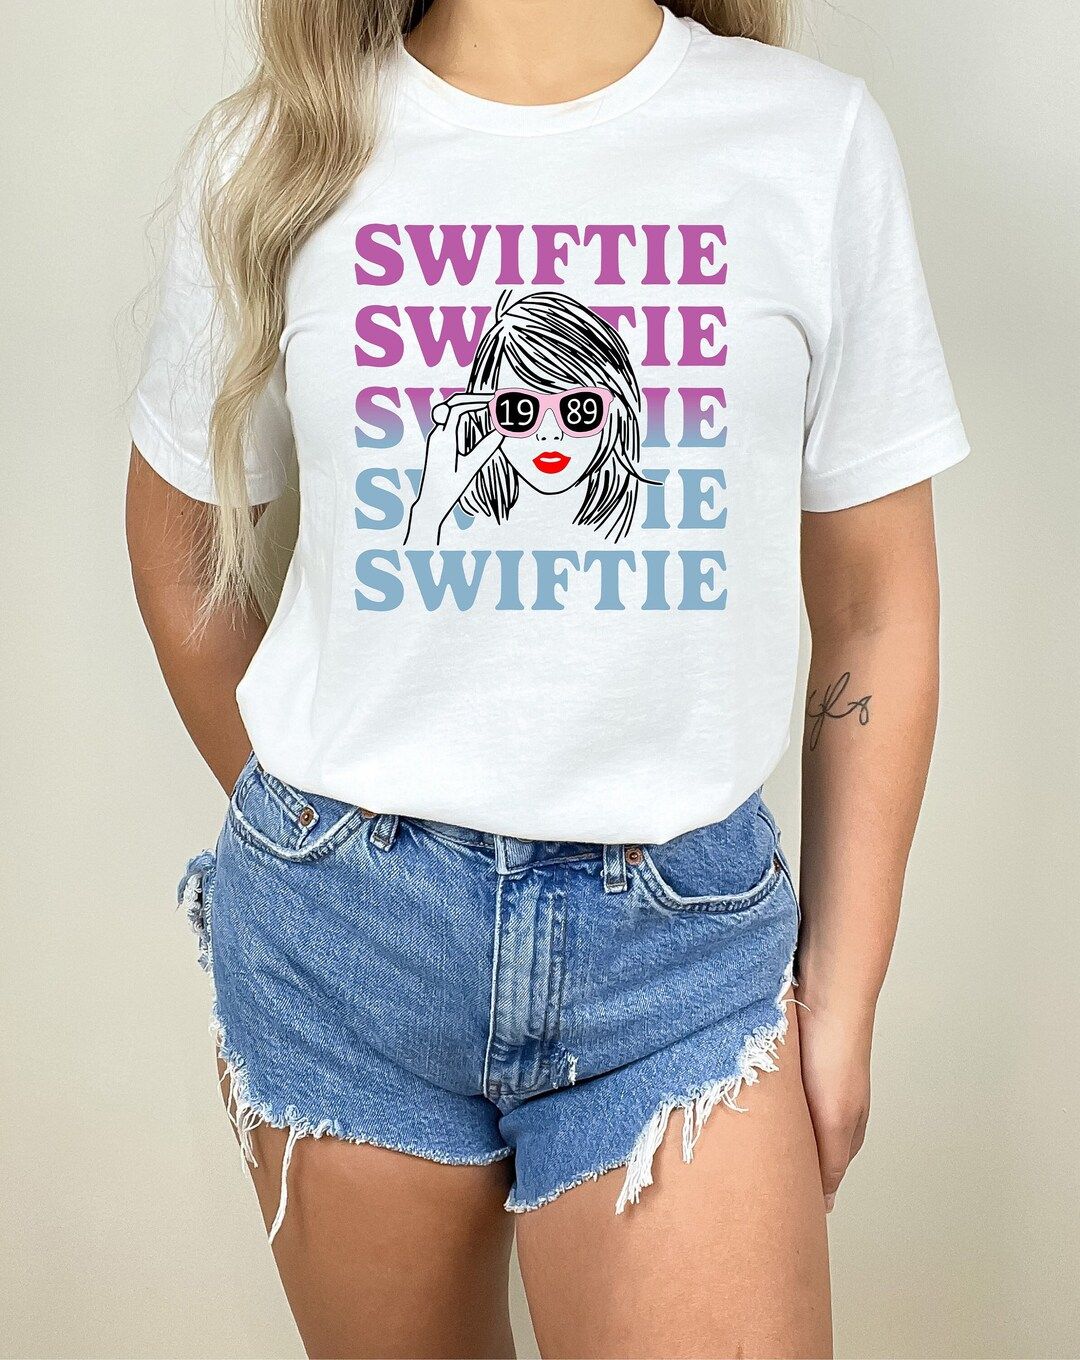 Swiftie T-shirt, Retro Swiftie Outfits, Swiftian Shirt, Swiftie Merch Shirt, Eras Concert T Shirt... | Etsy (US)